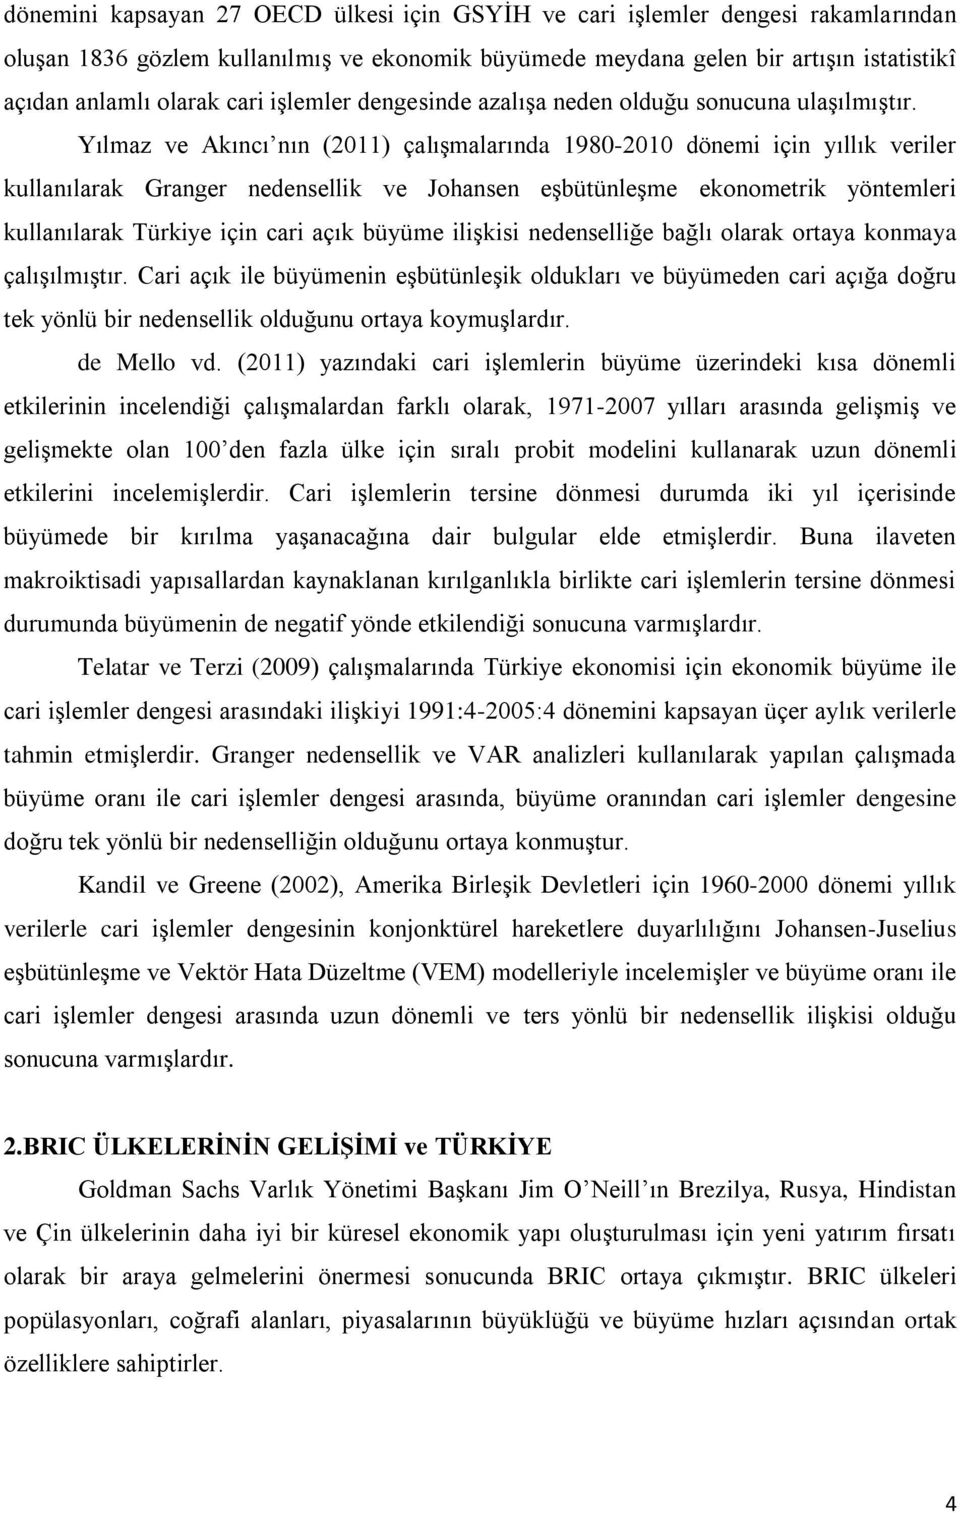 Yılmaz ve Akıncı nın (2011) çalışmalarında 1980-2010 dönemi için yıllık veriler kullanılarak Granger nedensellik ve Johansen eşbütünleşme ekonometrik yöntemleri kullanılarak Türkiye için cari açık